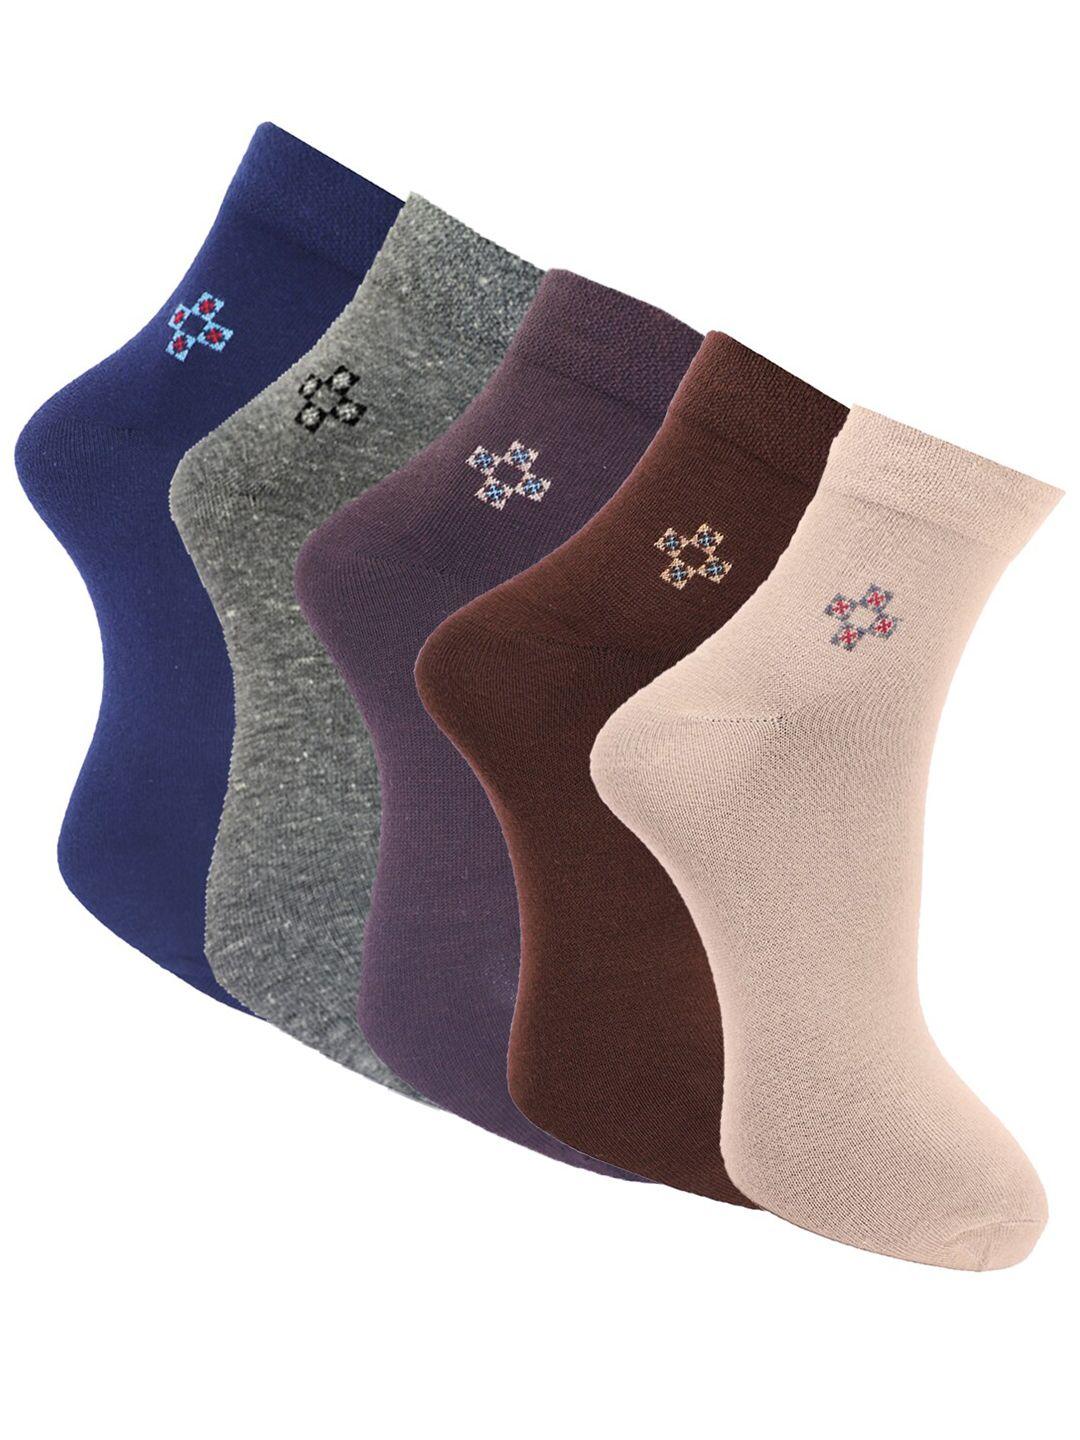 dollar-socks-men-pack-of-5-assorted-ankle-length-cotton-socks